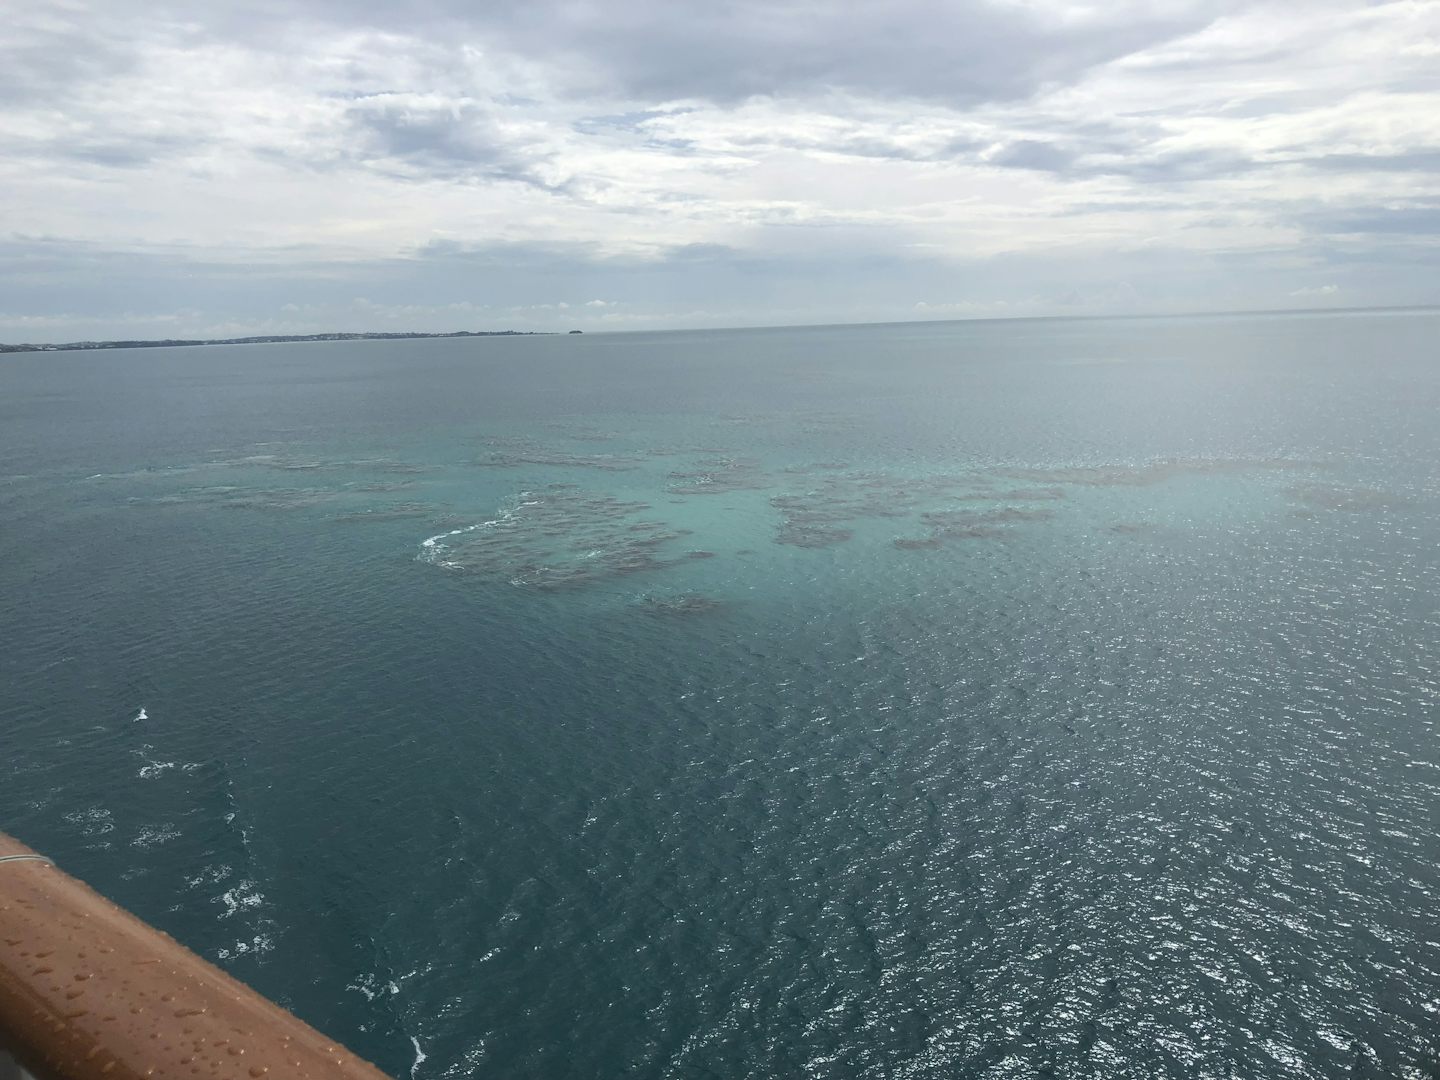 Coral Reef- leaving Bermuda